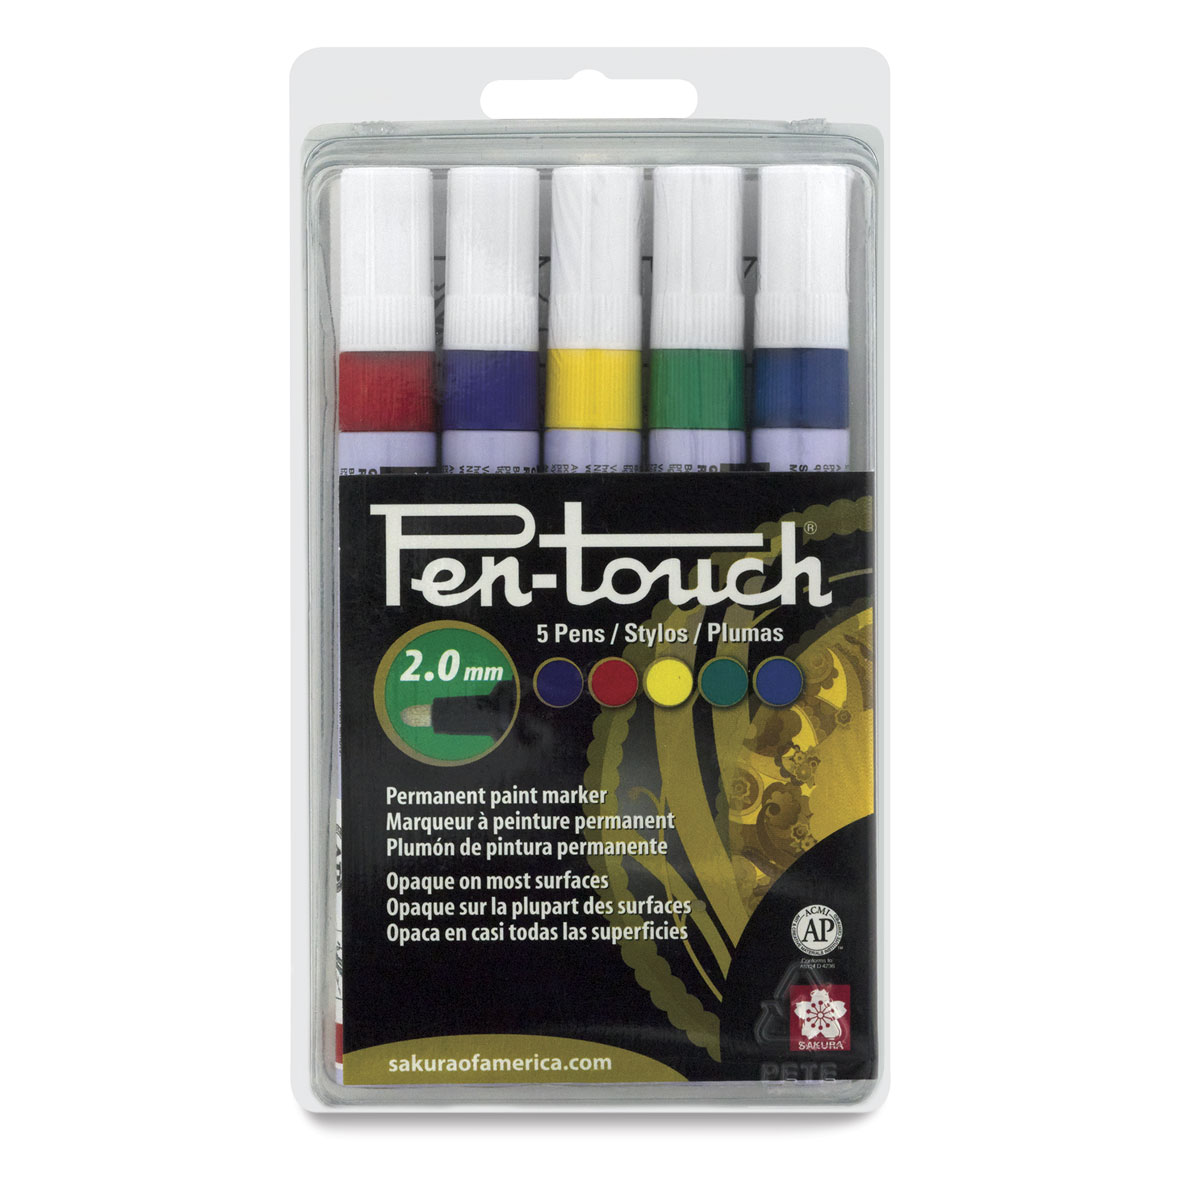 About Pen-Touch Paint Marker